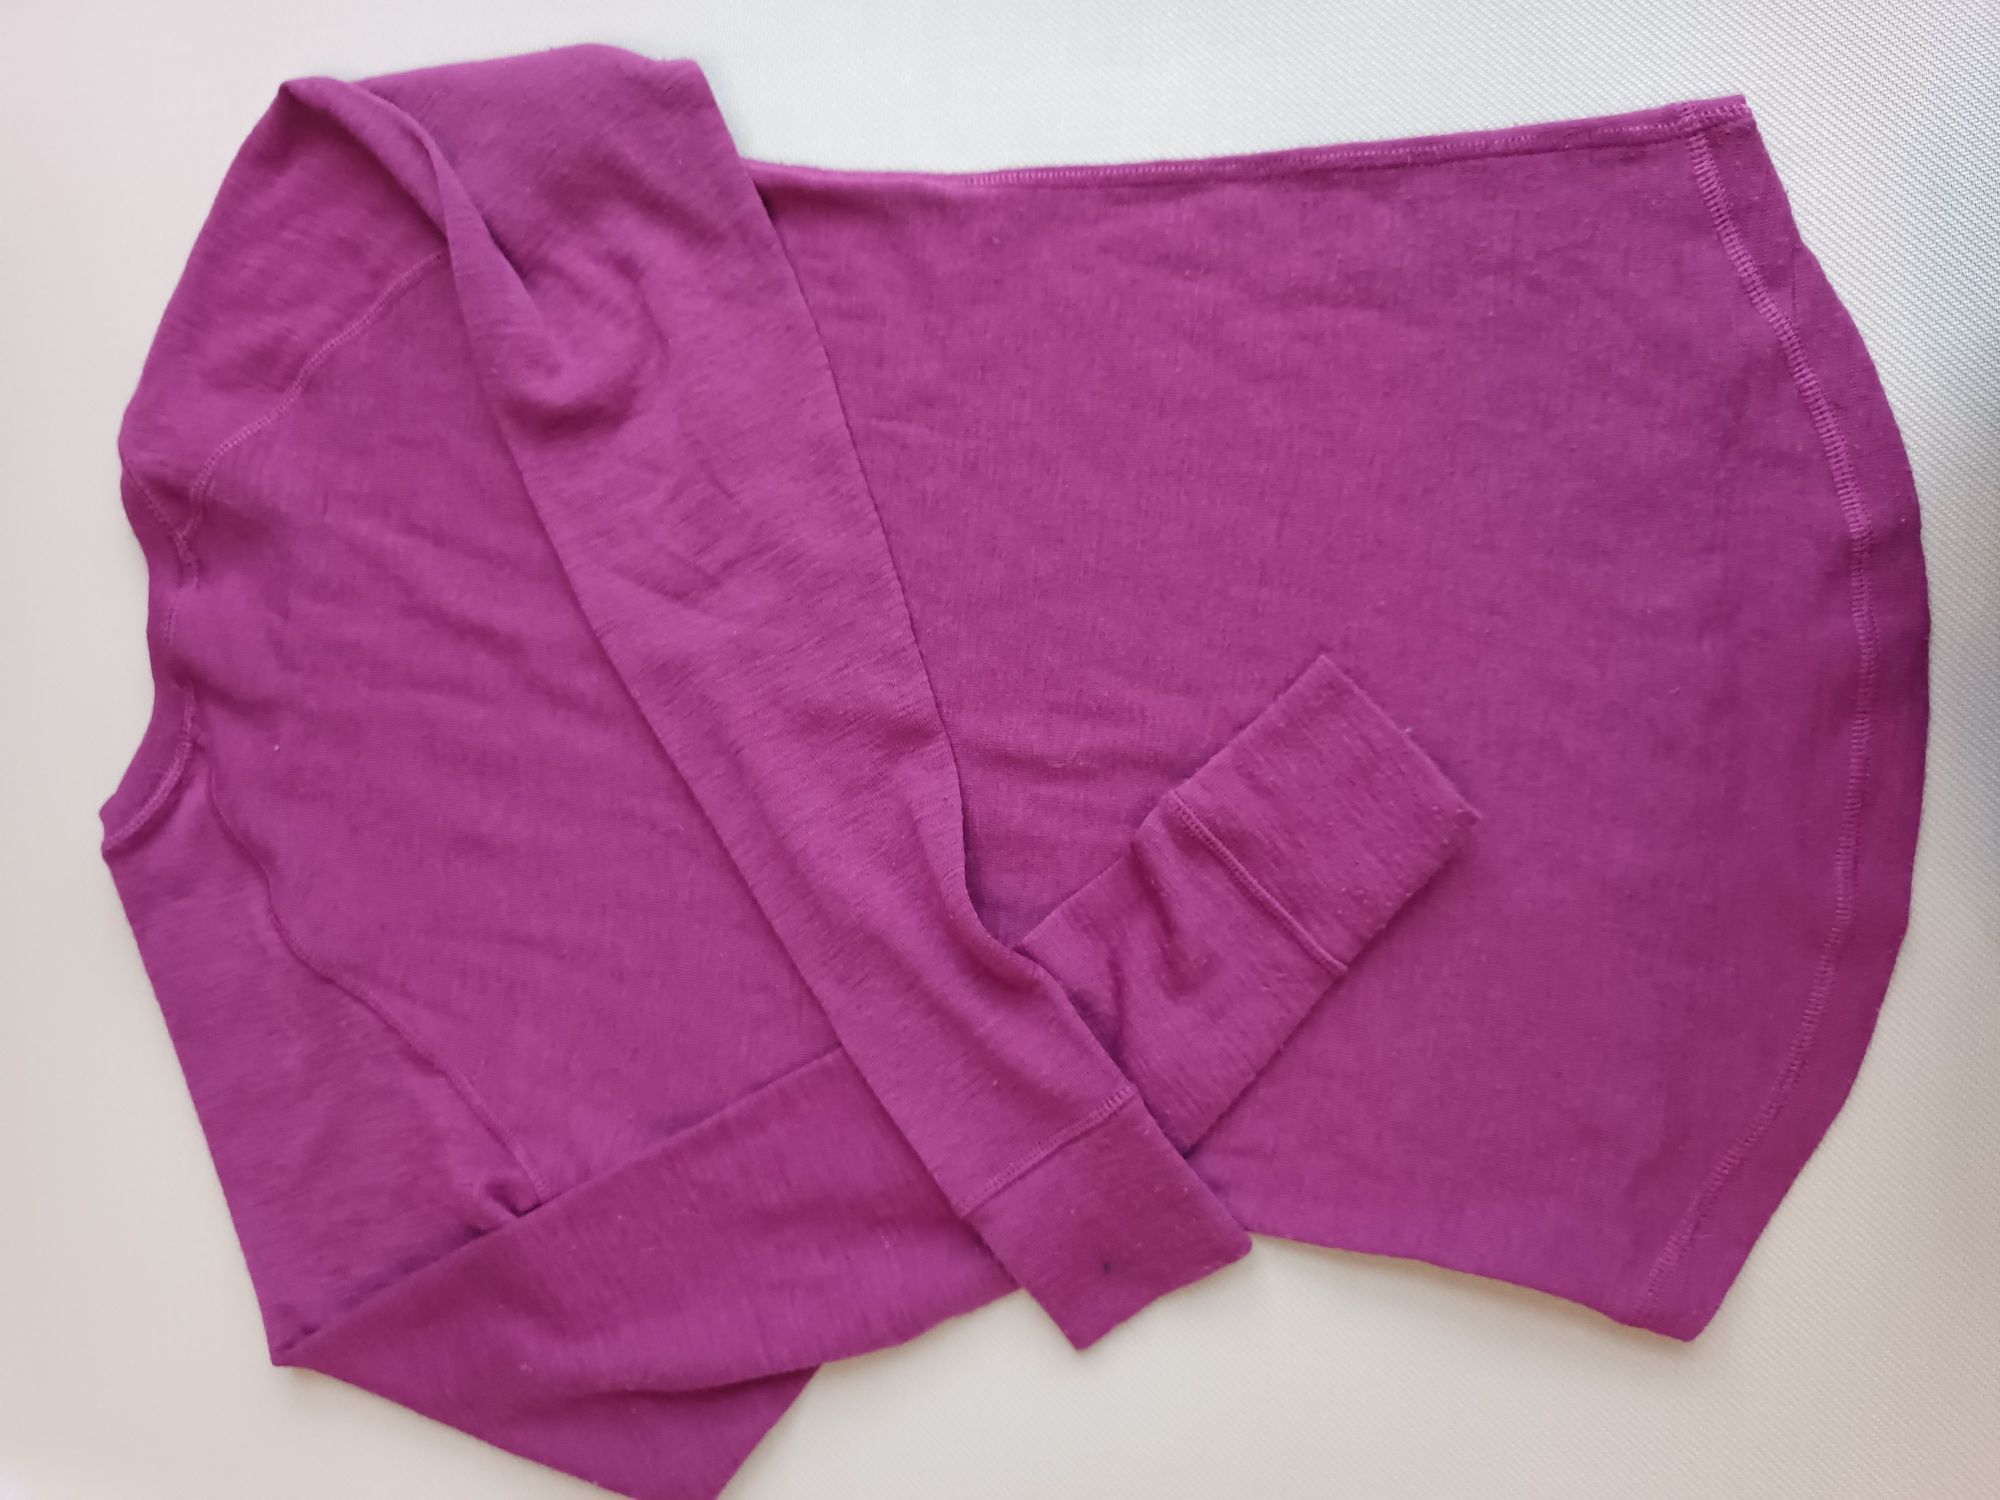 Norheim koszulka fioletowa 50% wełna merino rozmiar S damska